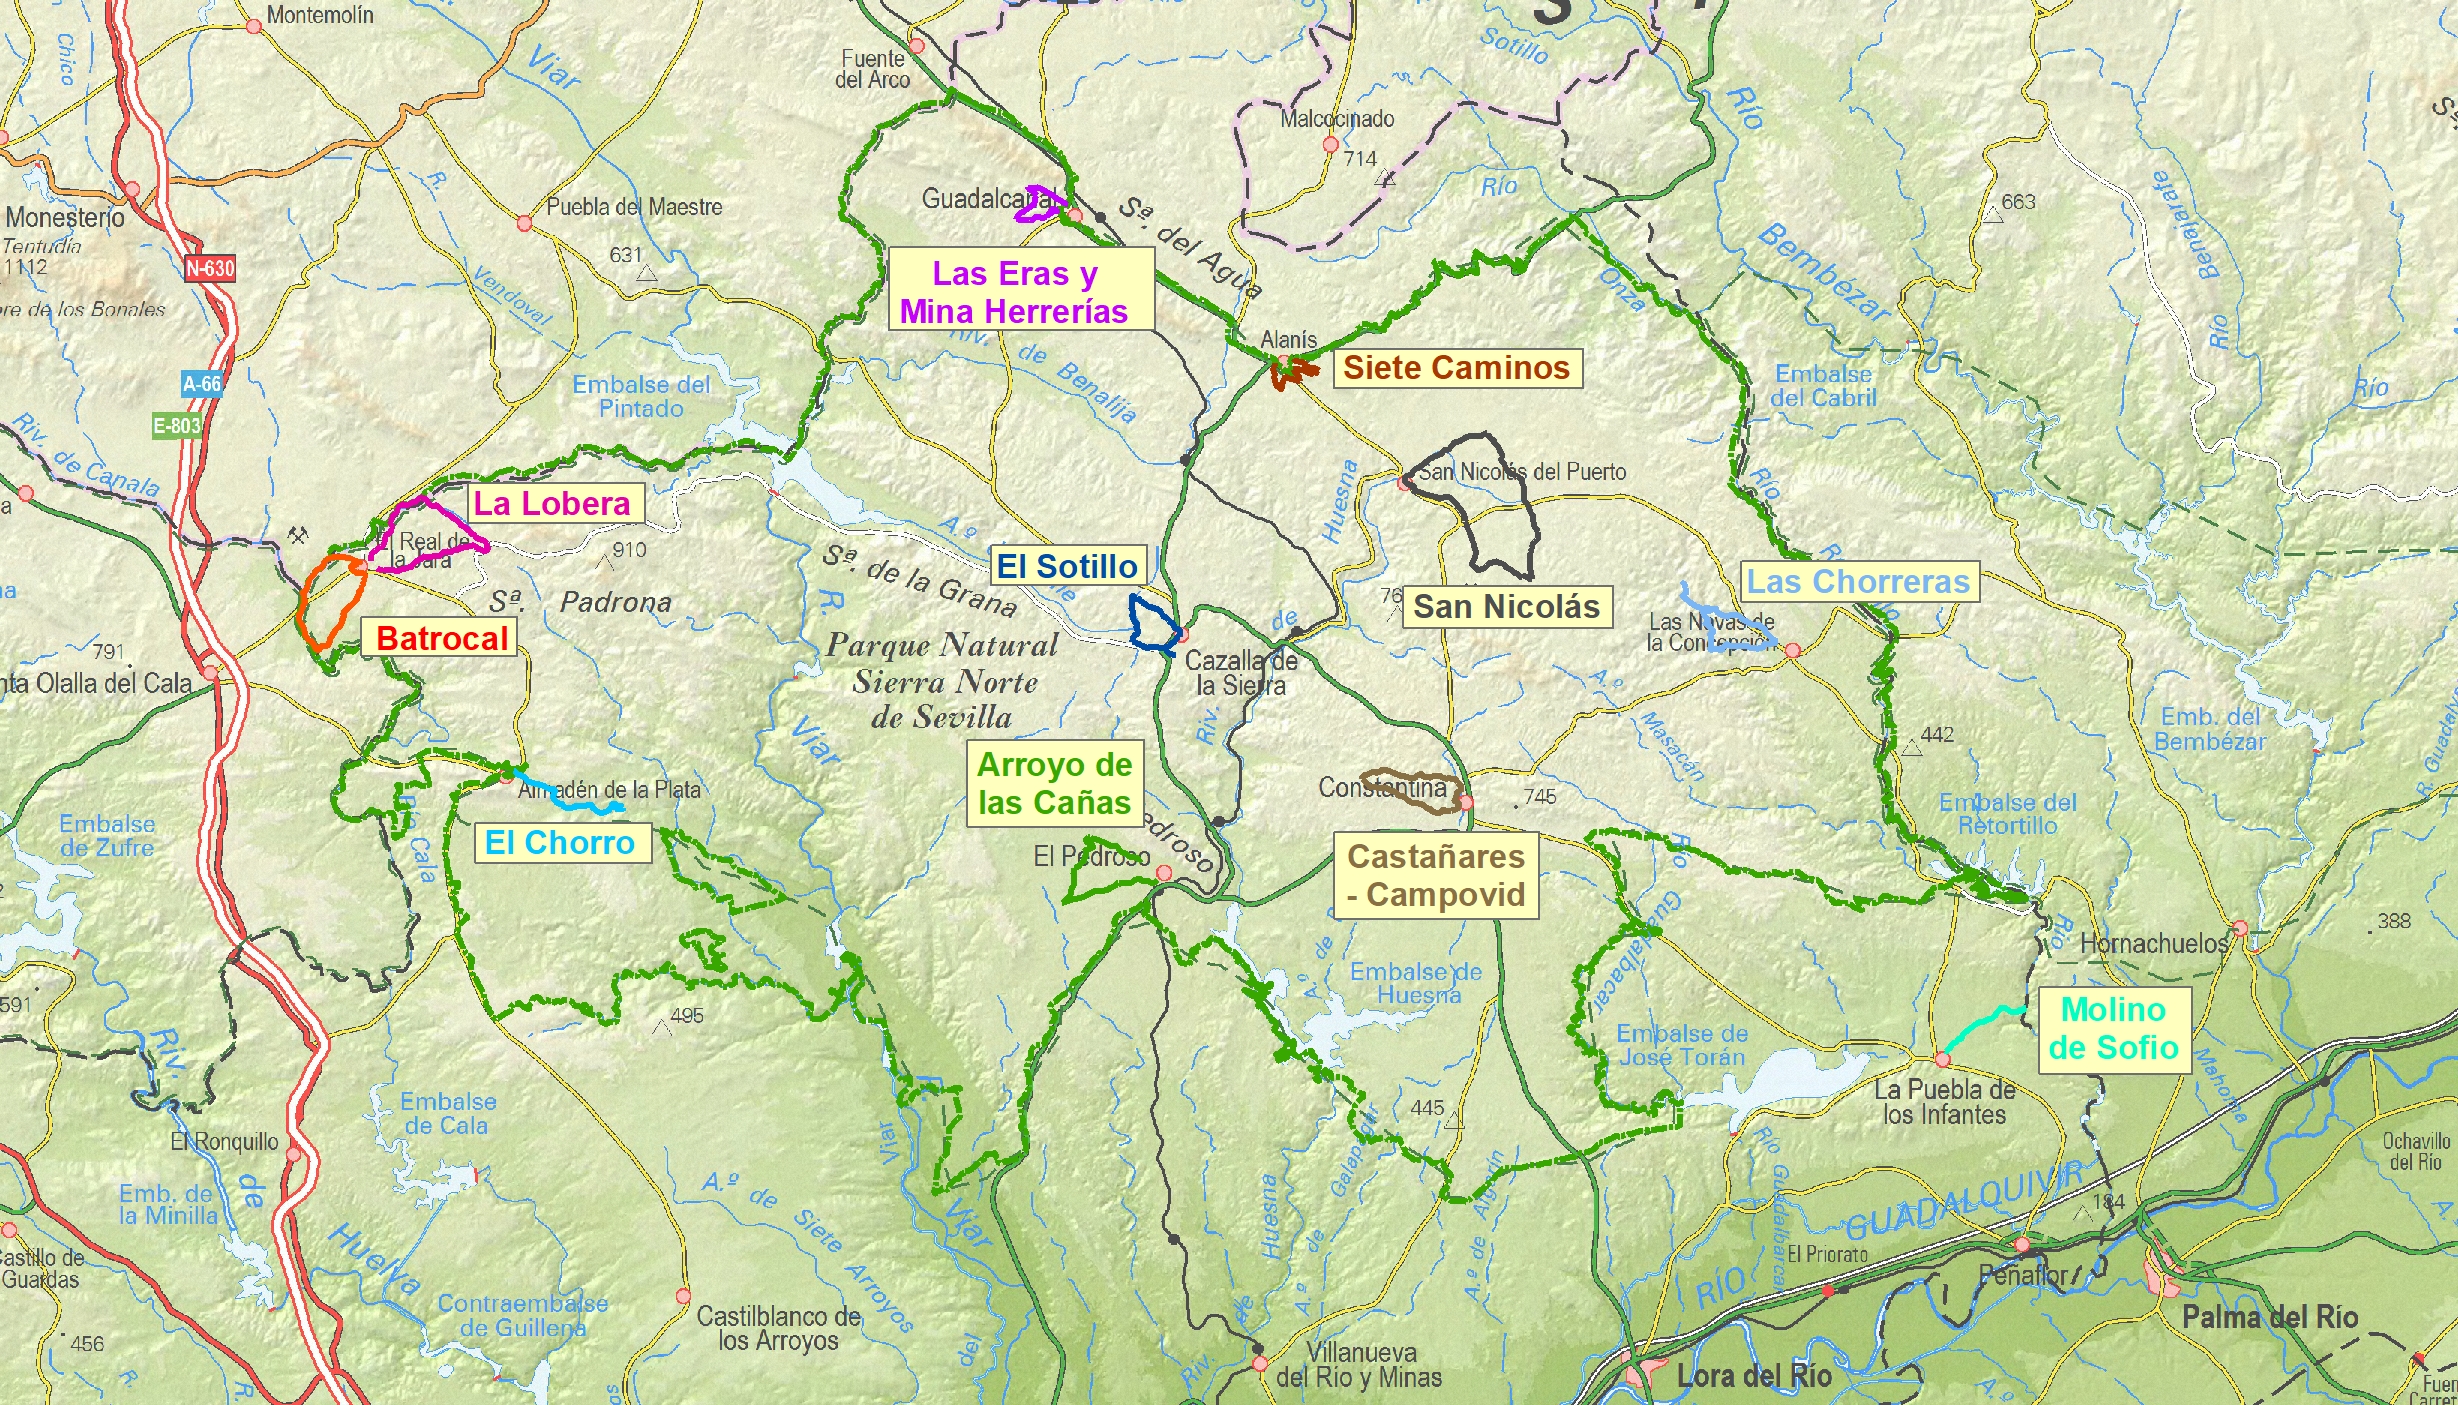 Ampliar imagen: vista de detalle del mapa